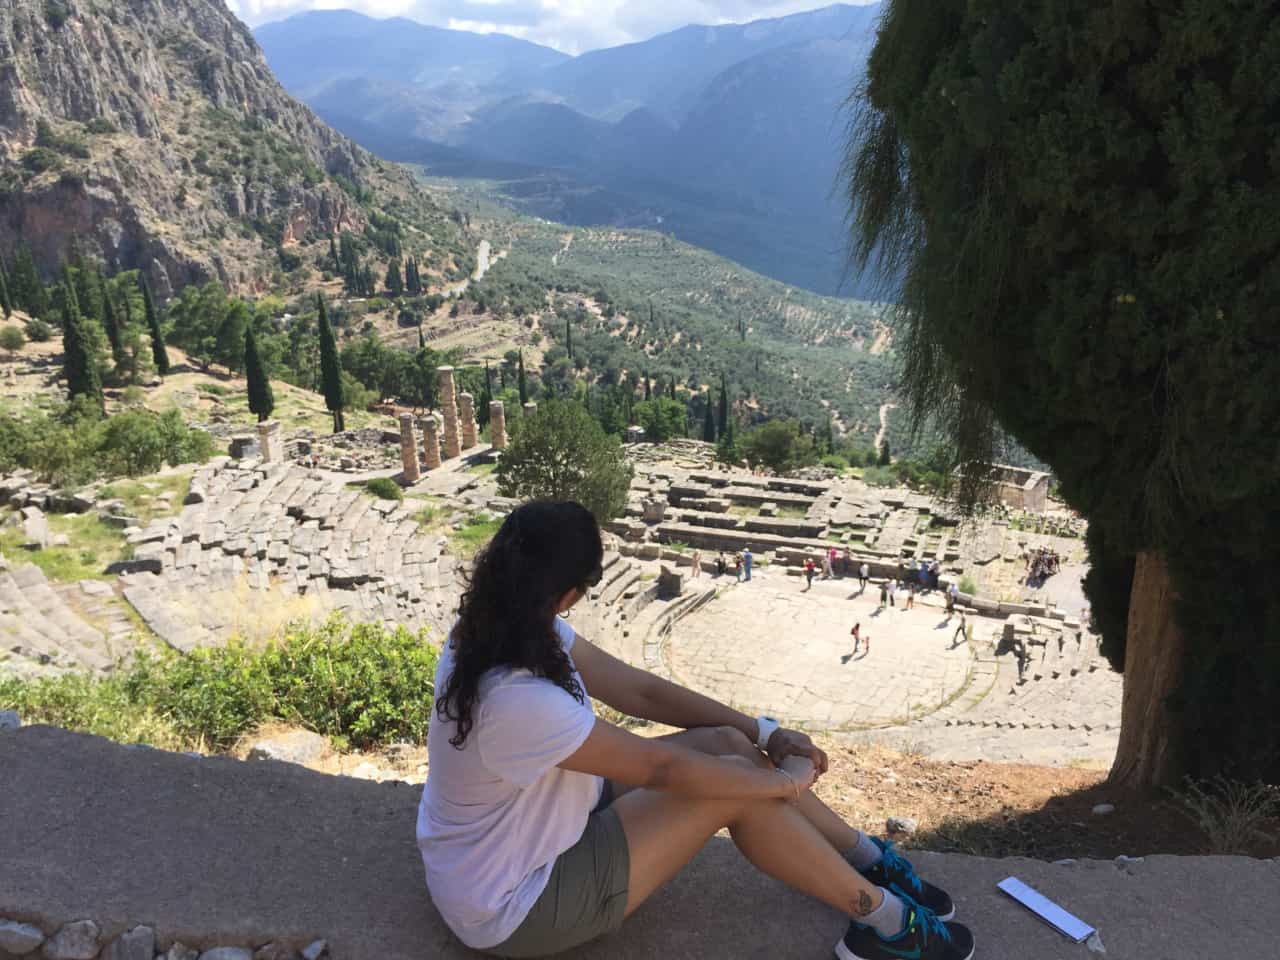 A day trip to Delphi